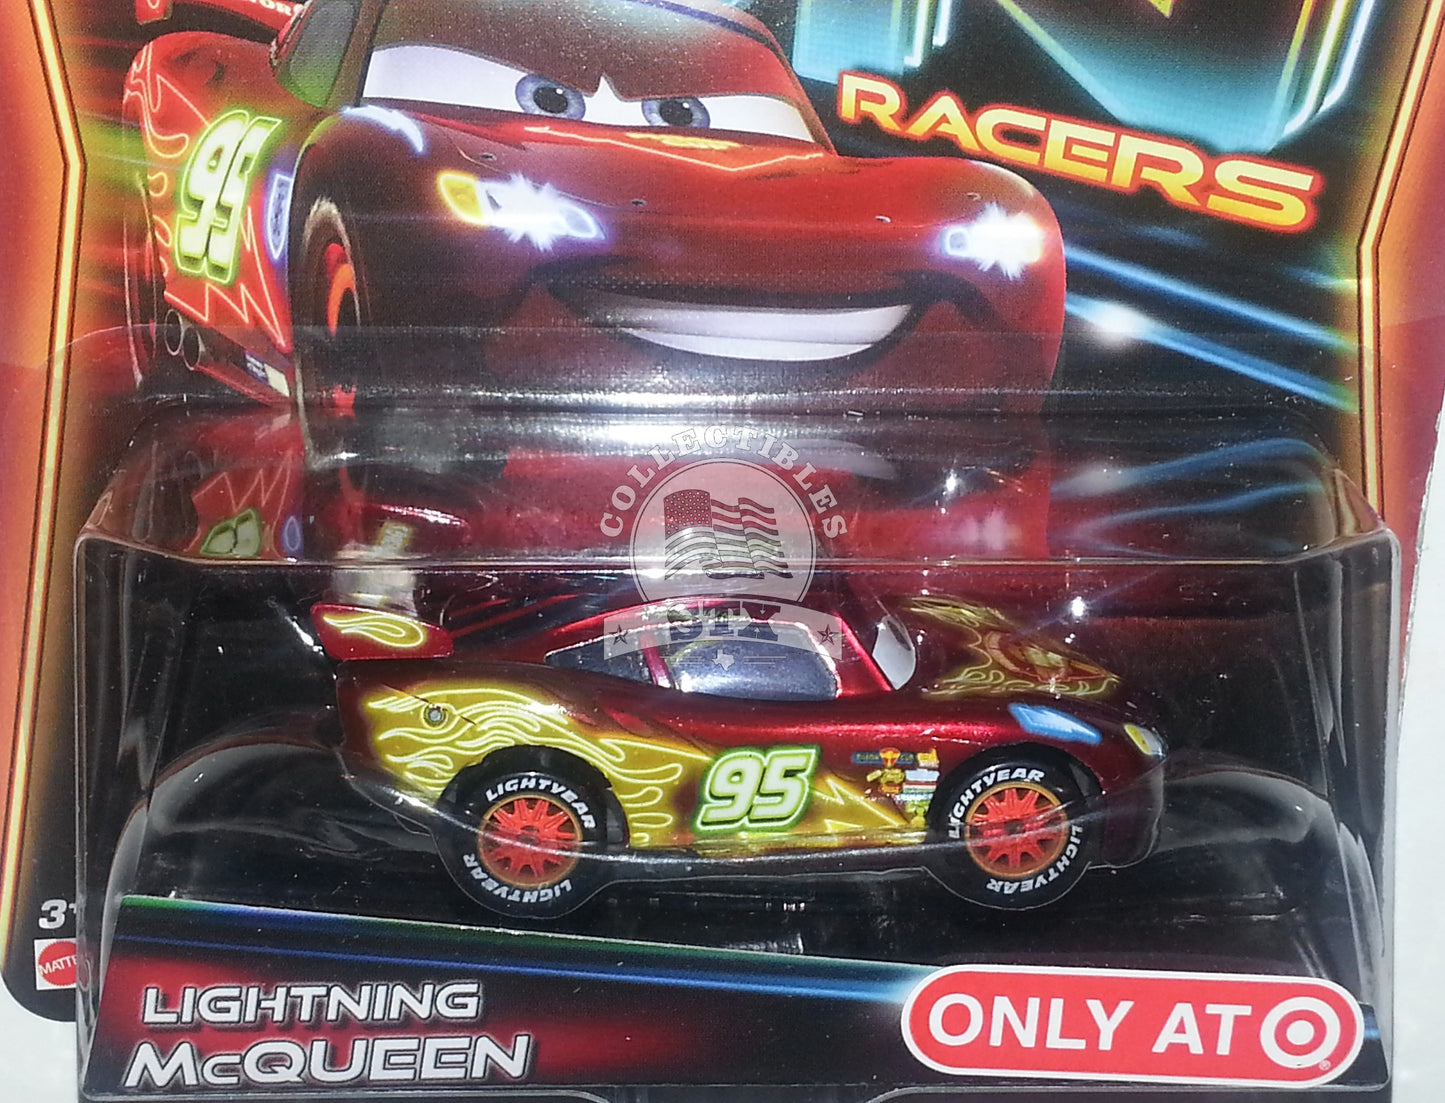 Disney Cars - Lightning McQueen - Neon Racers